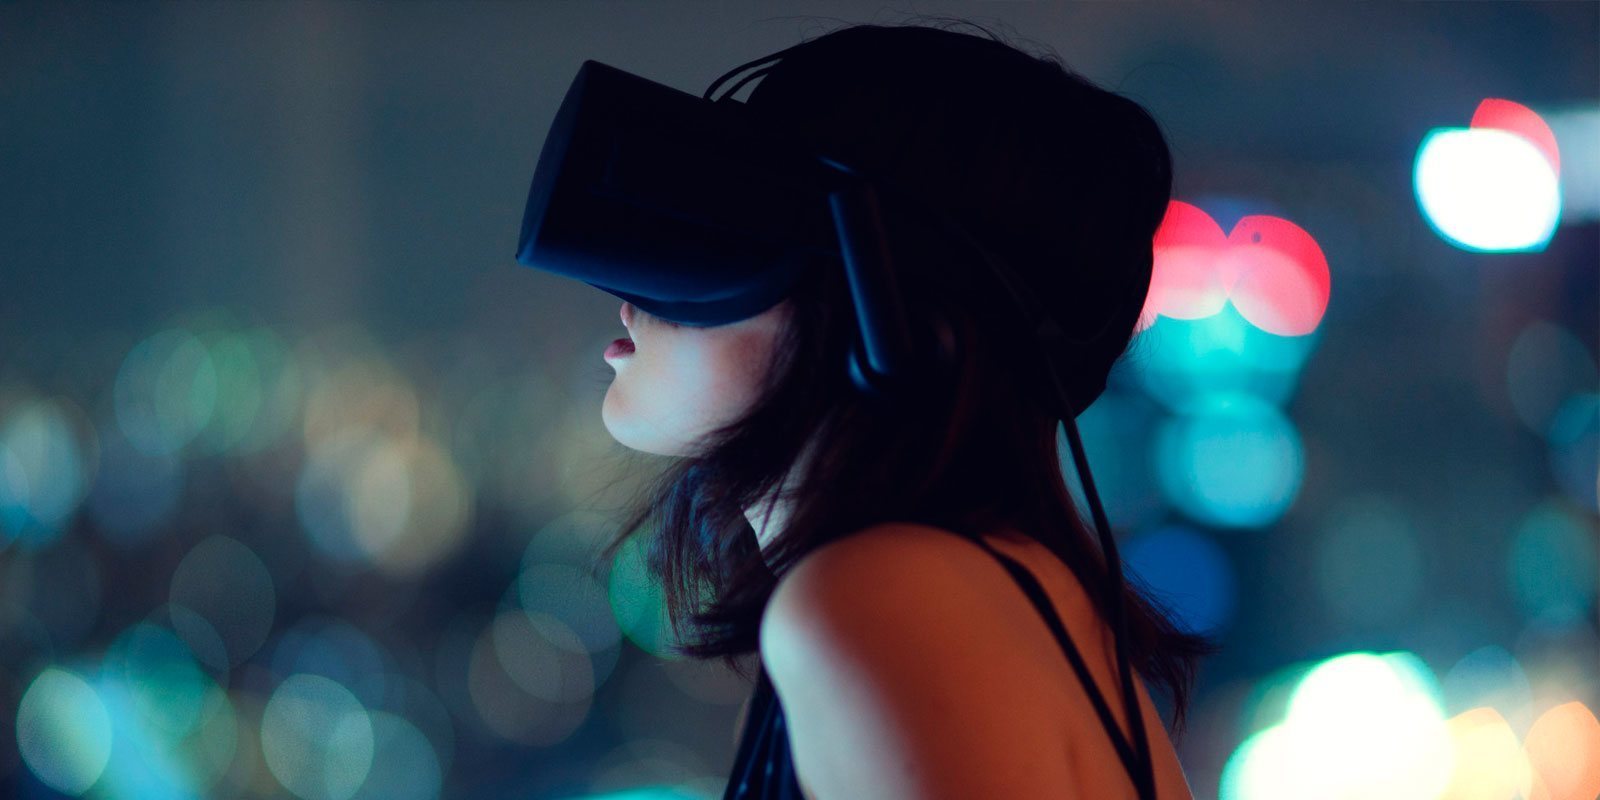 Los centros de realidad virtual son un negocio de futuro según un estudio